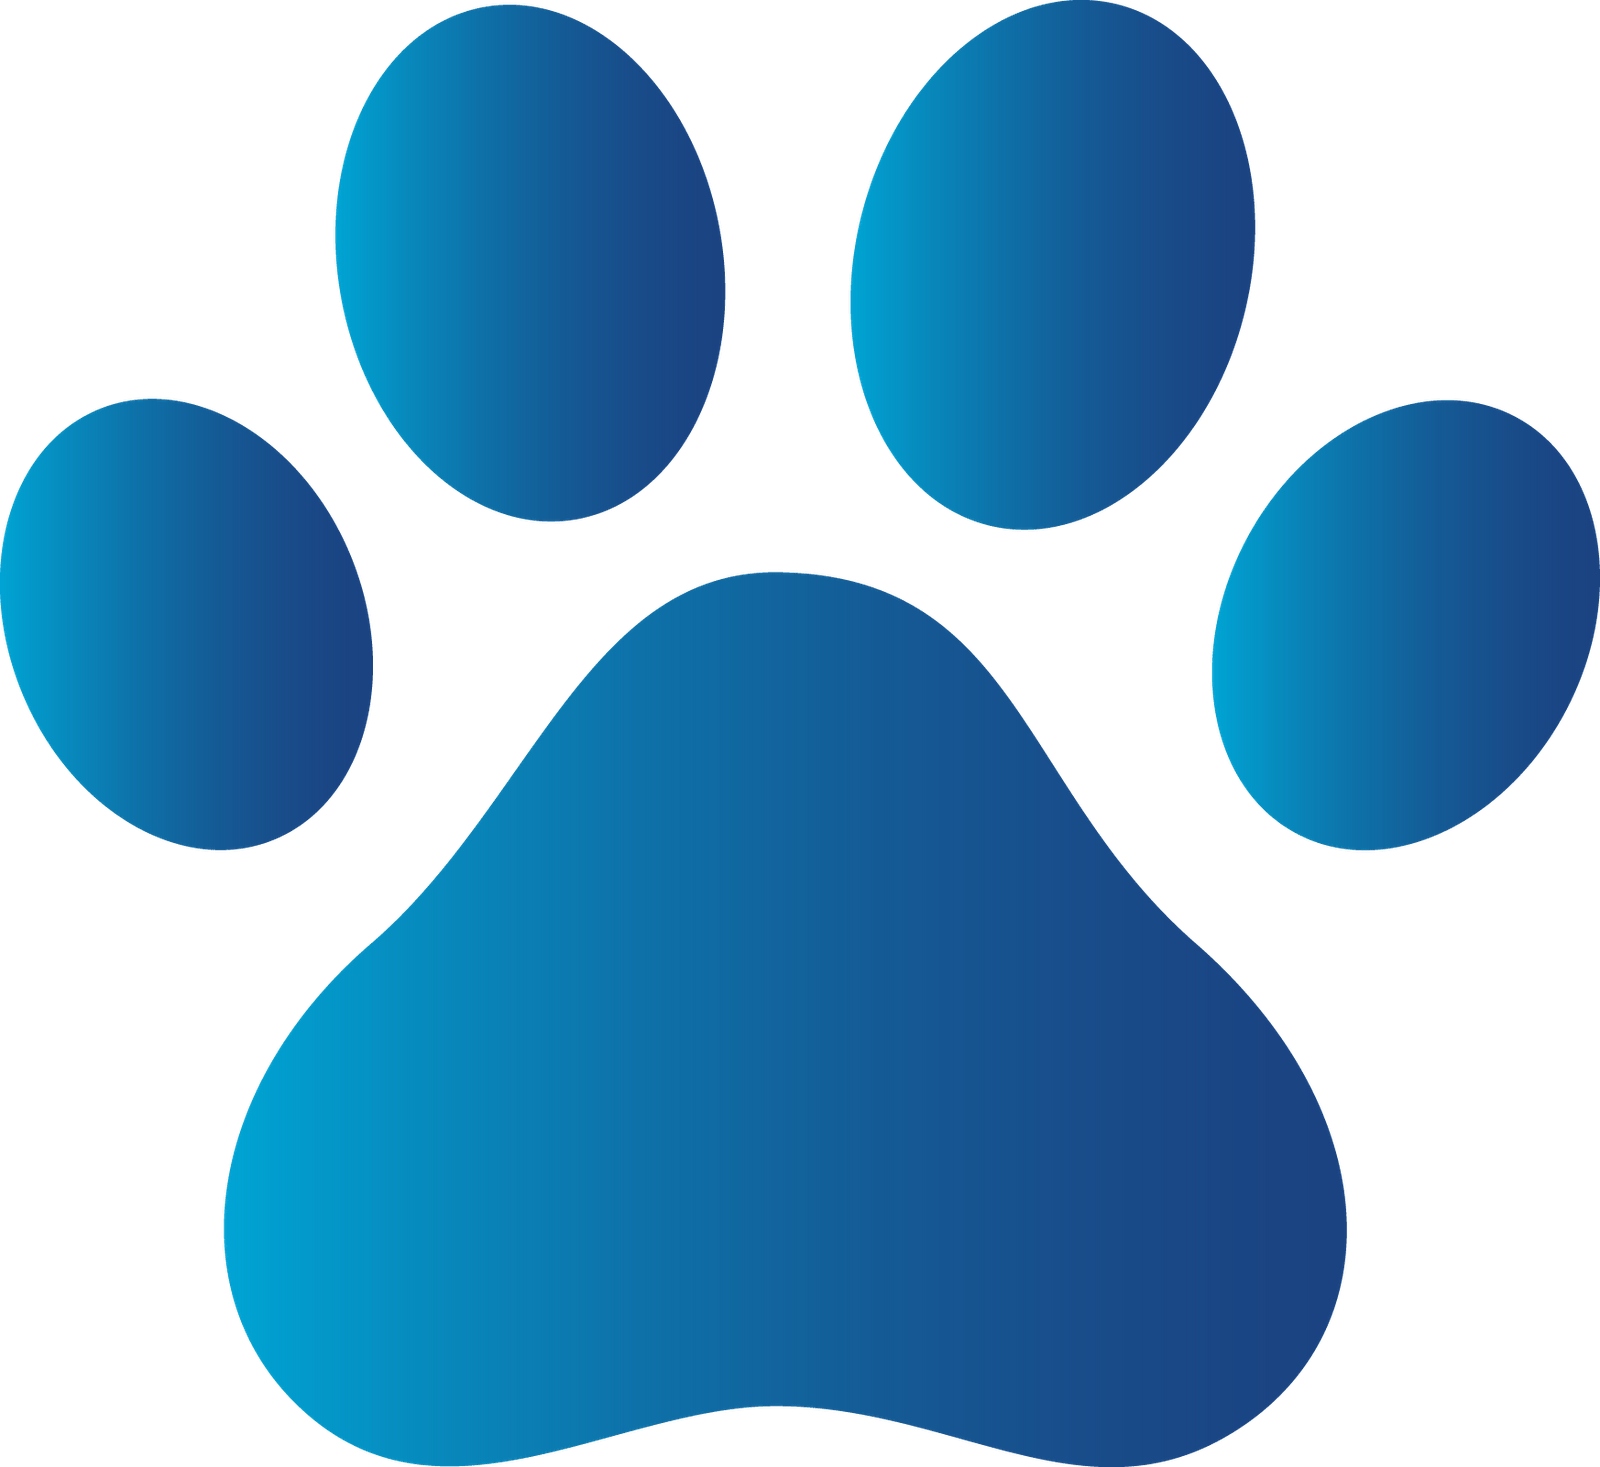 Blue Dog Paw Logo - Blue Dog Paw Print Logo free image